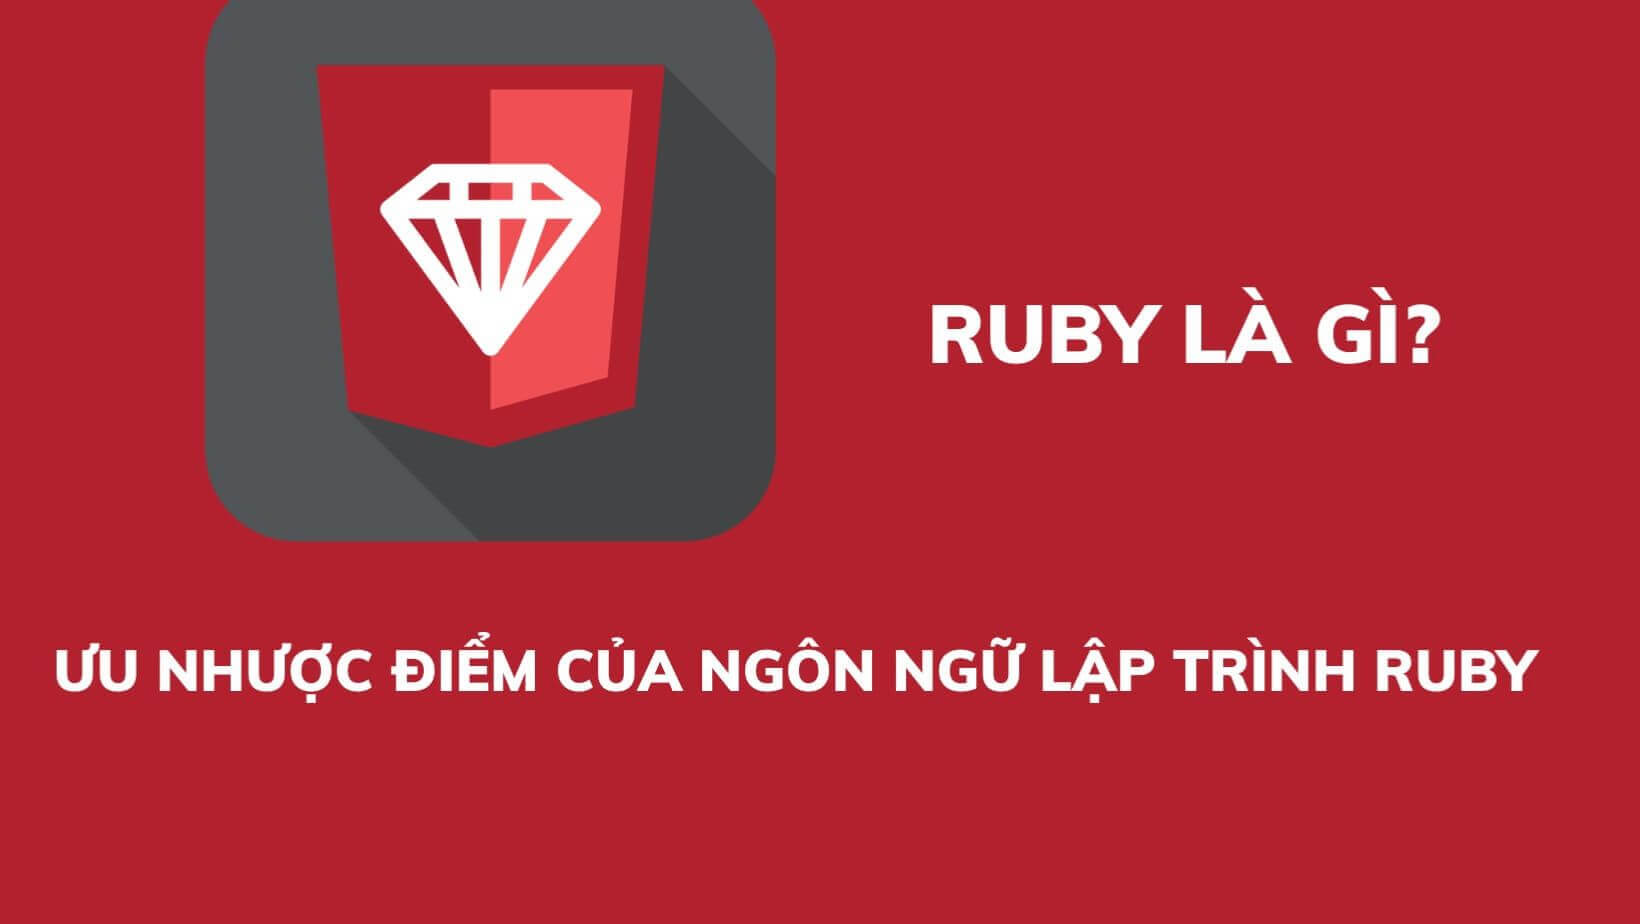 Ruby là gì? Ưu nhược điểm của ngôn ngữ lập trình ruby